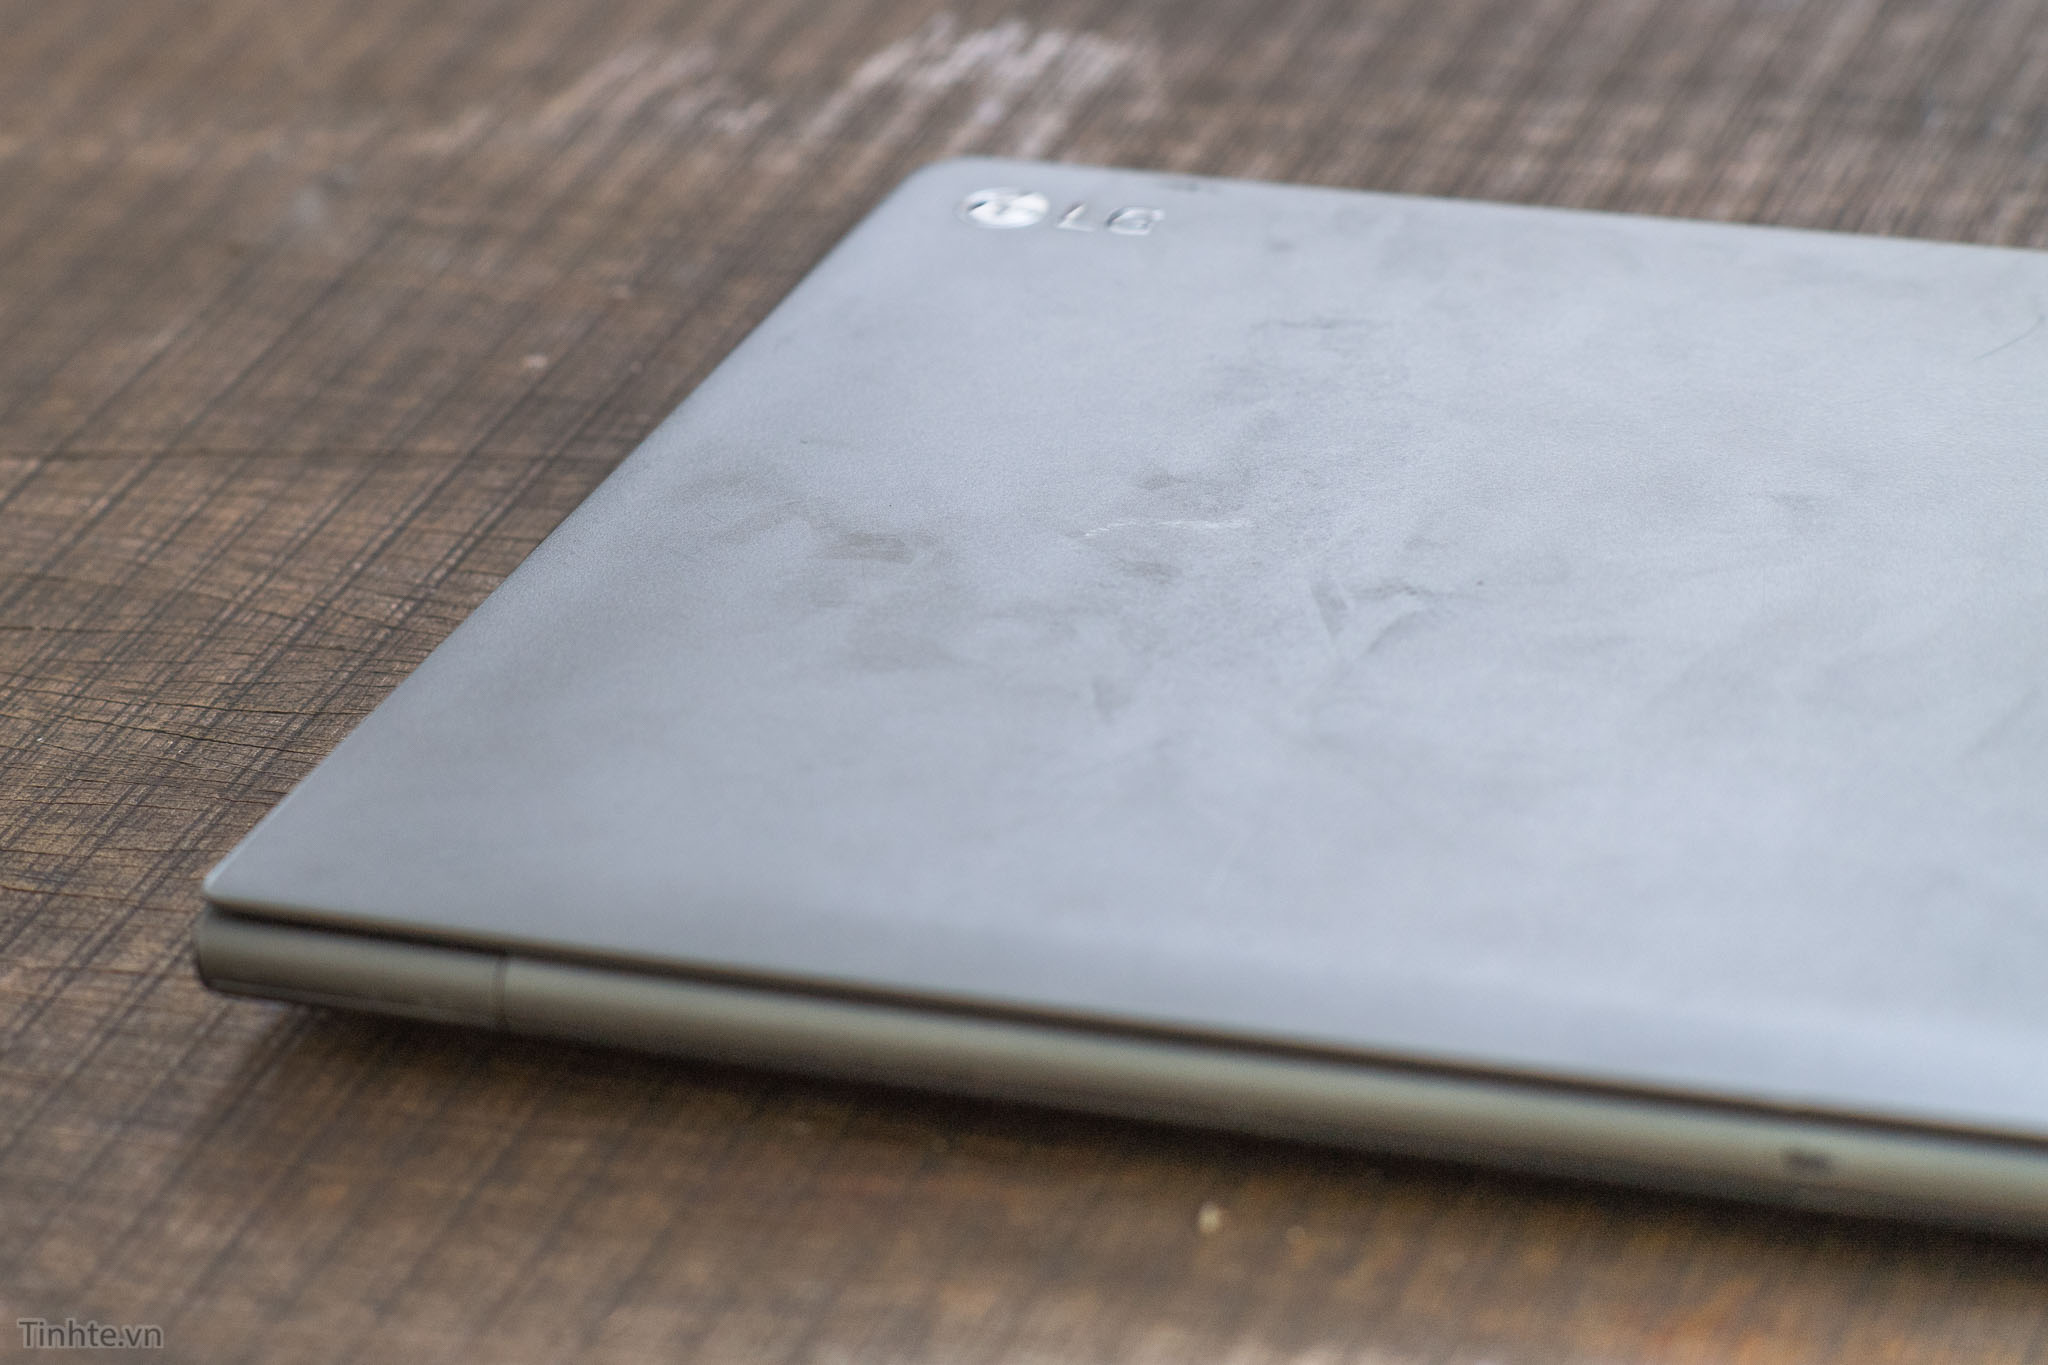 Sao laptop gram của LG mỏng nhẹ "như giấy" mà lại siêu bền như vậy? 4198256_LG_Gram_thu_do_Ben_Tinhte.vn-5